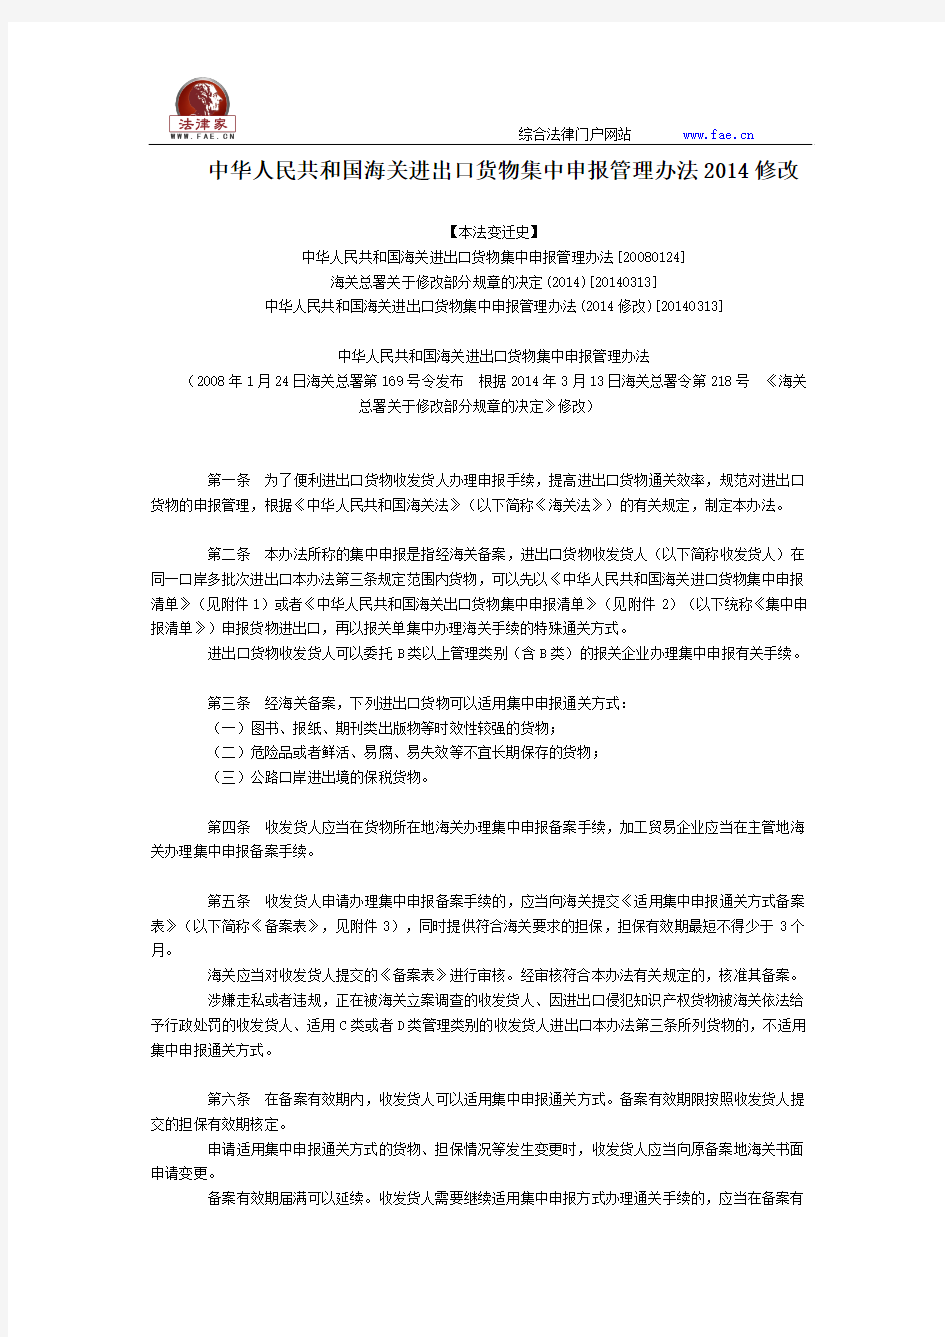 中华人民共和国海关进出口货物集中申报管理办法2014修改全文--国务院部委规章